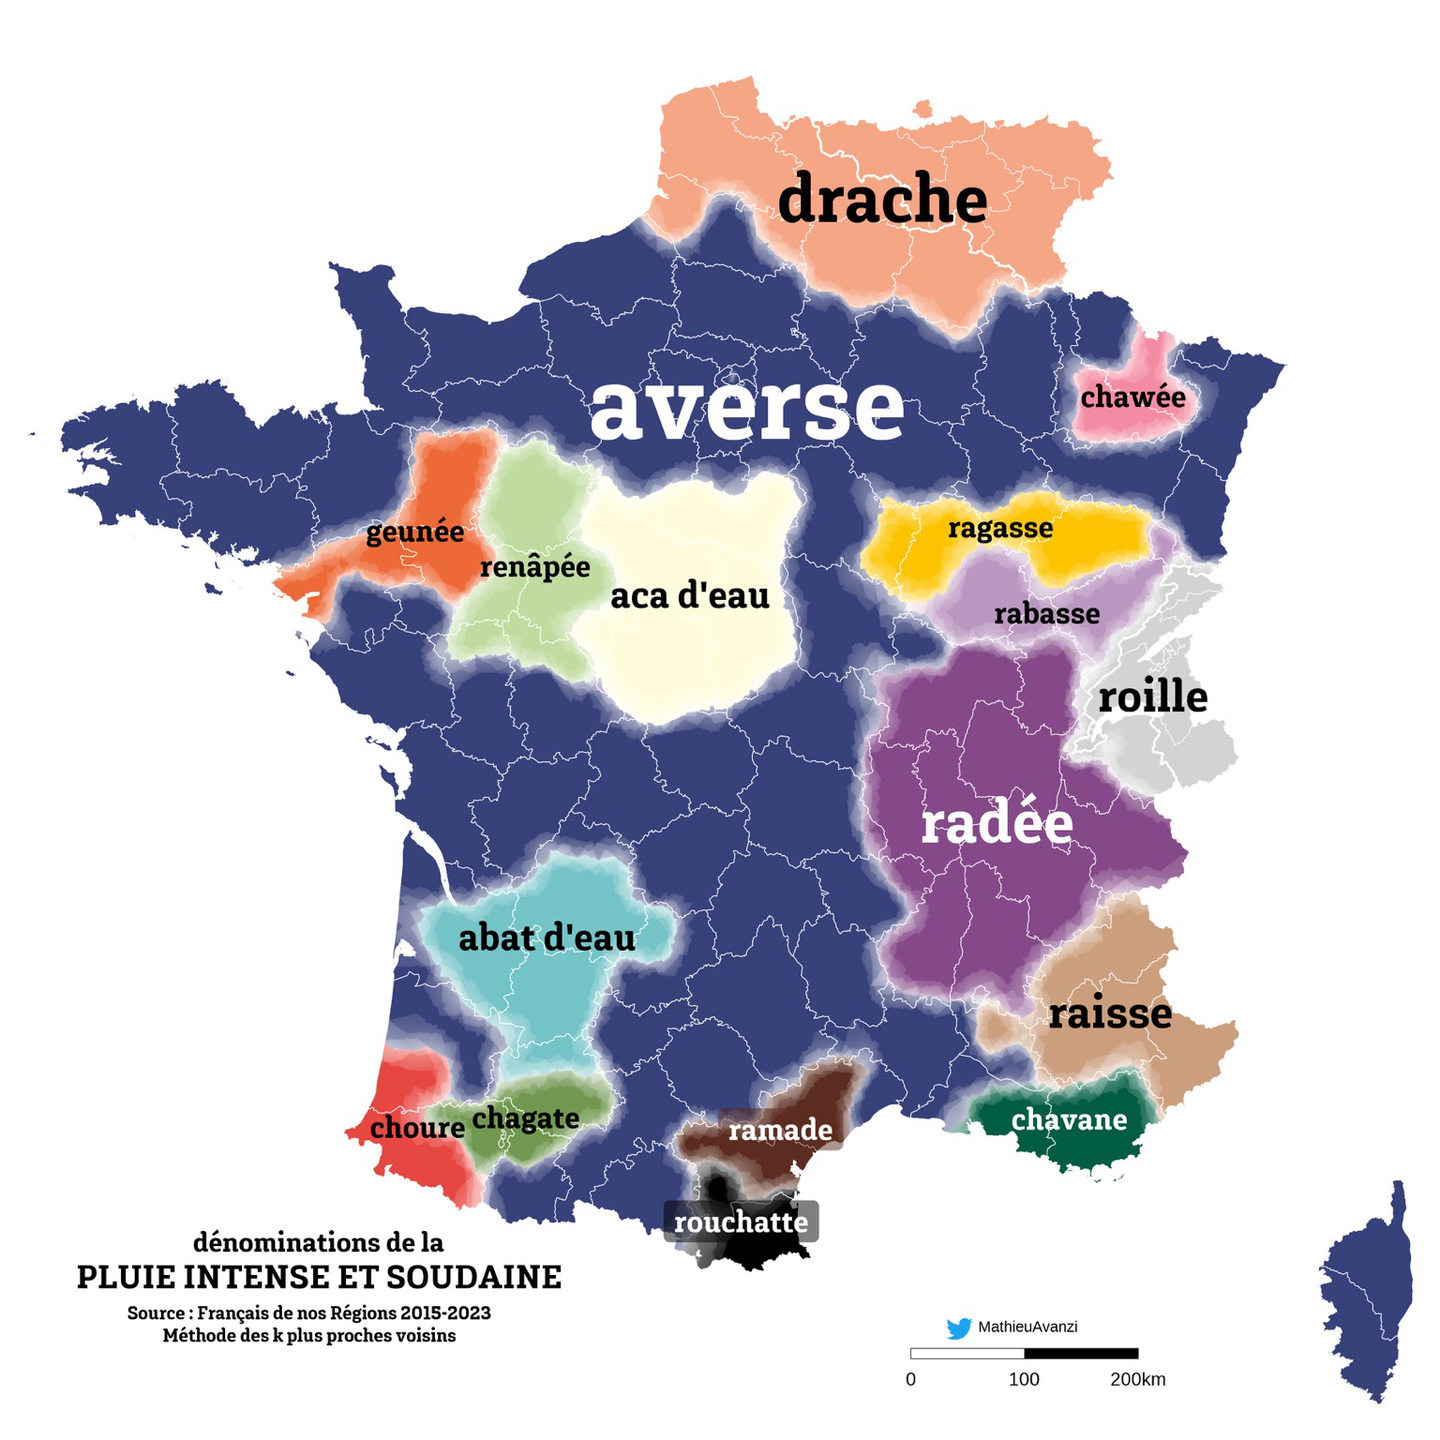 Mathieu Avanzi sur LinkedIn : Mise en ligne d'une carte parlante des  langues minoritaires d'Europe…